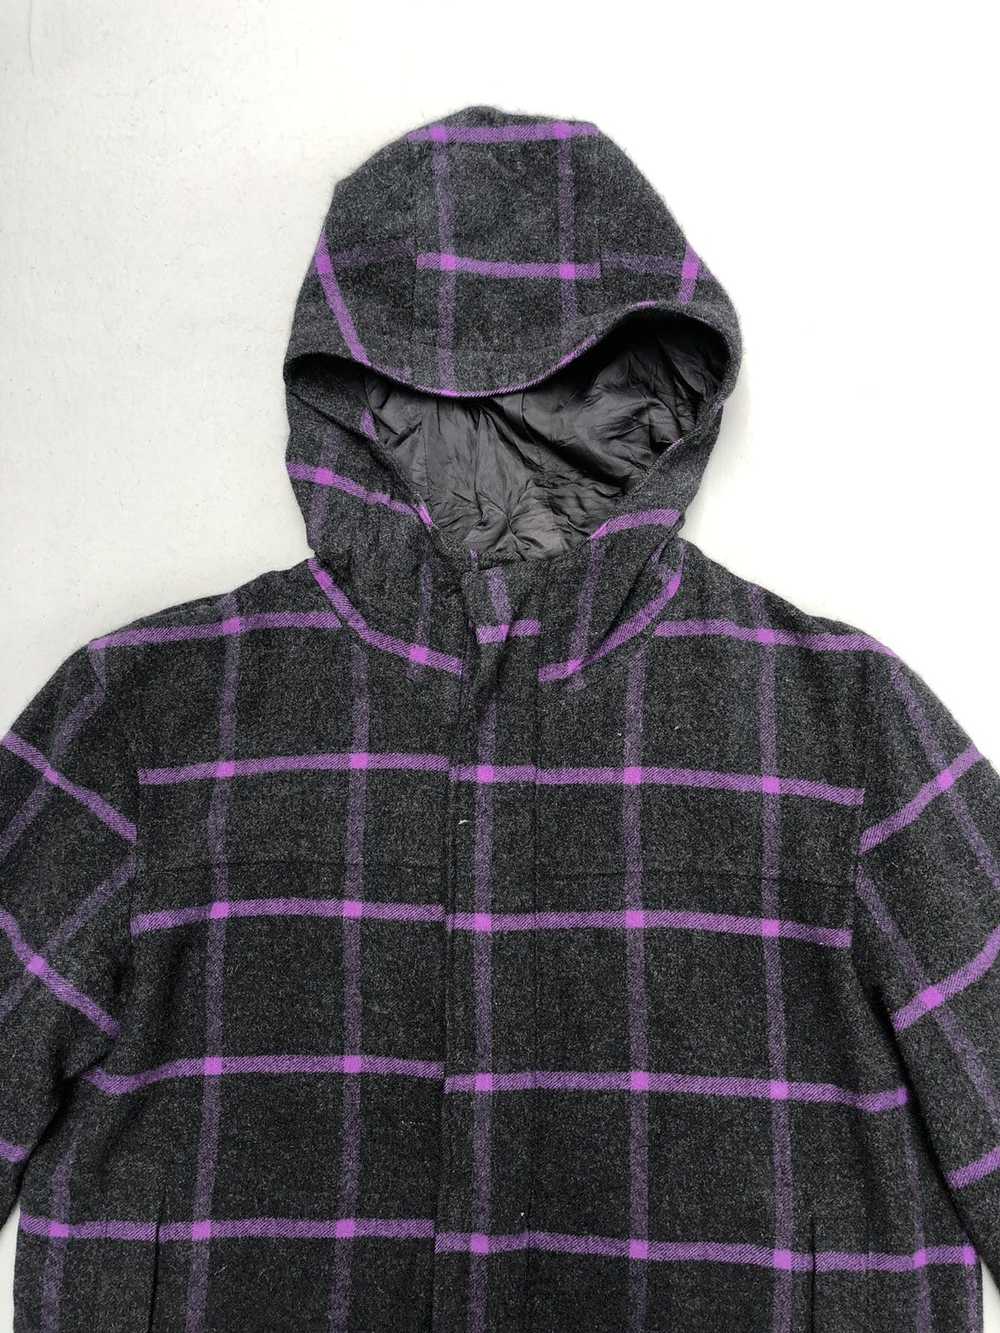 Paul Smith Plaid Tartan Hooded Wool Jacket - image 3